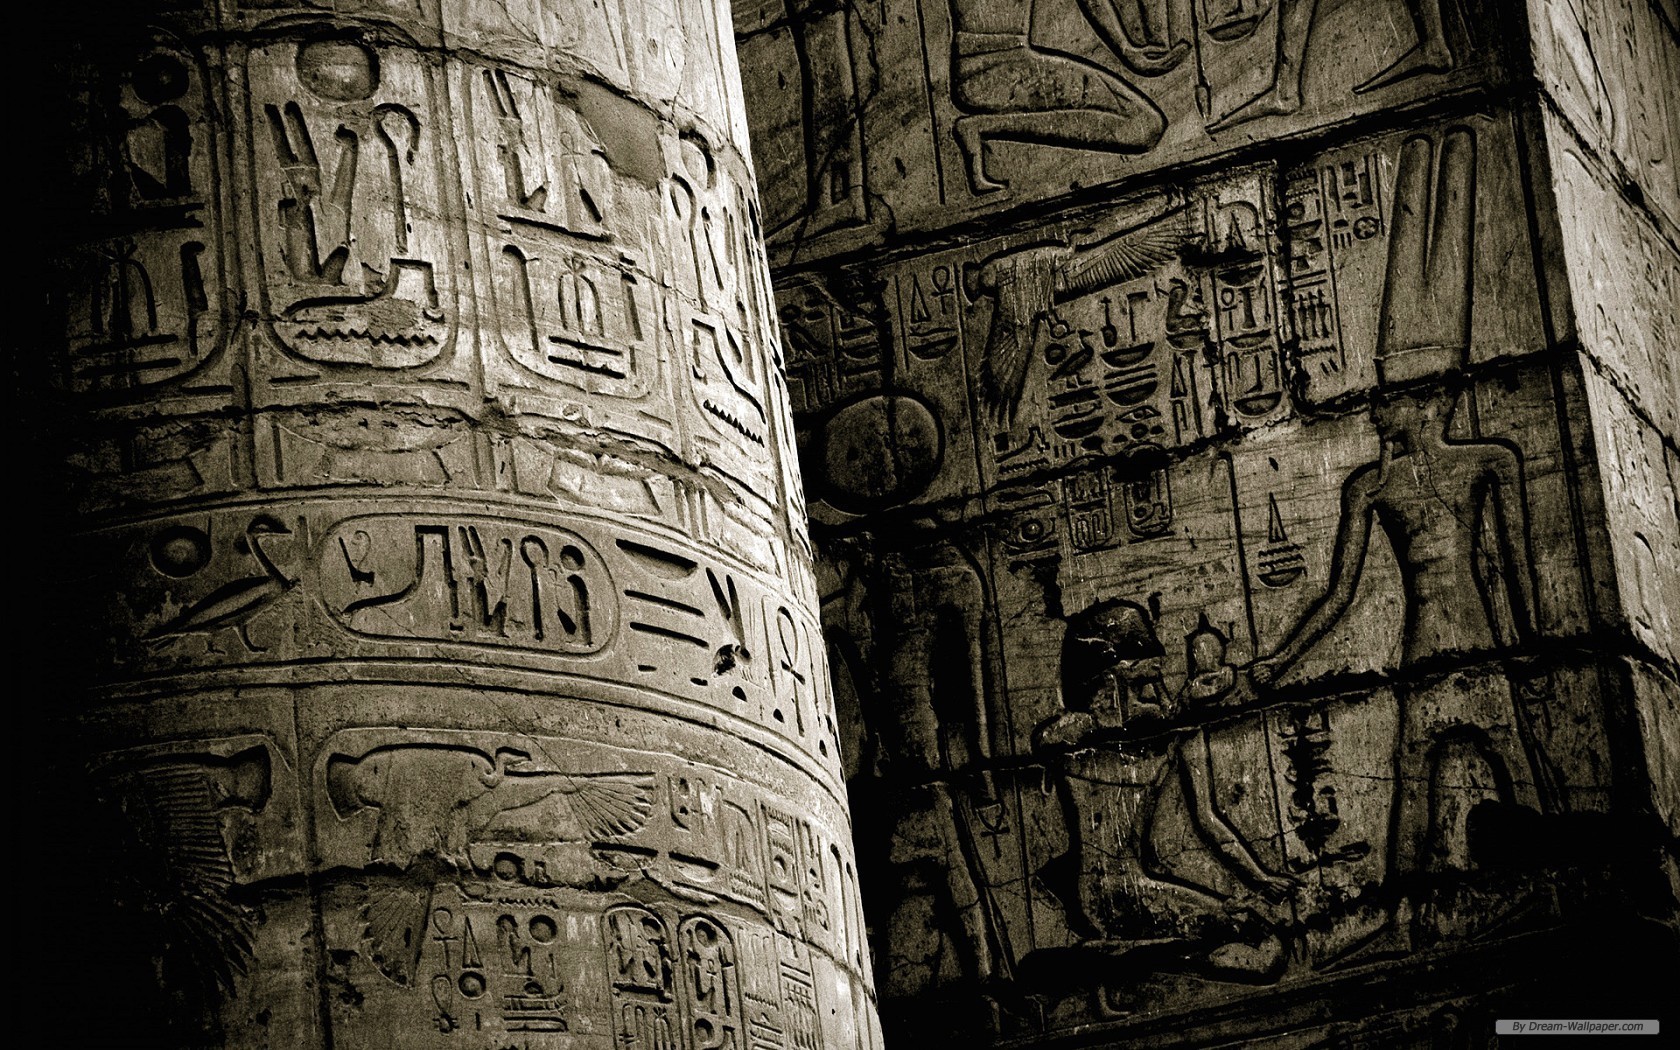 General 1680x1050 Egypt Gods of Egypt ancient hieroglyphics hieroglyphs movies